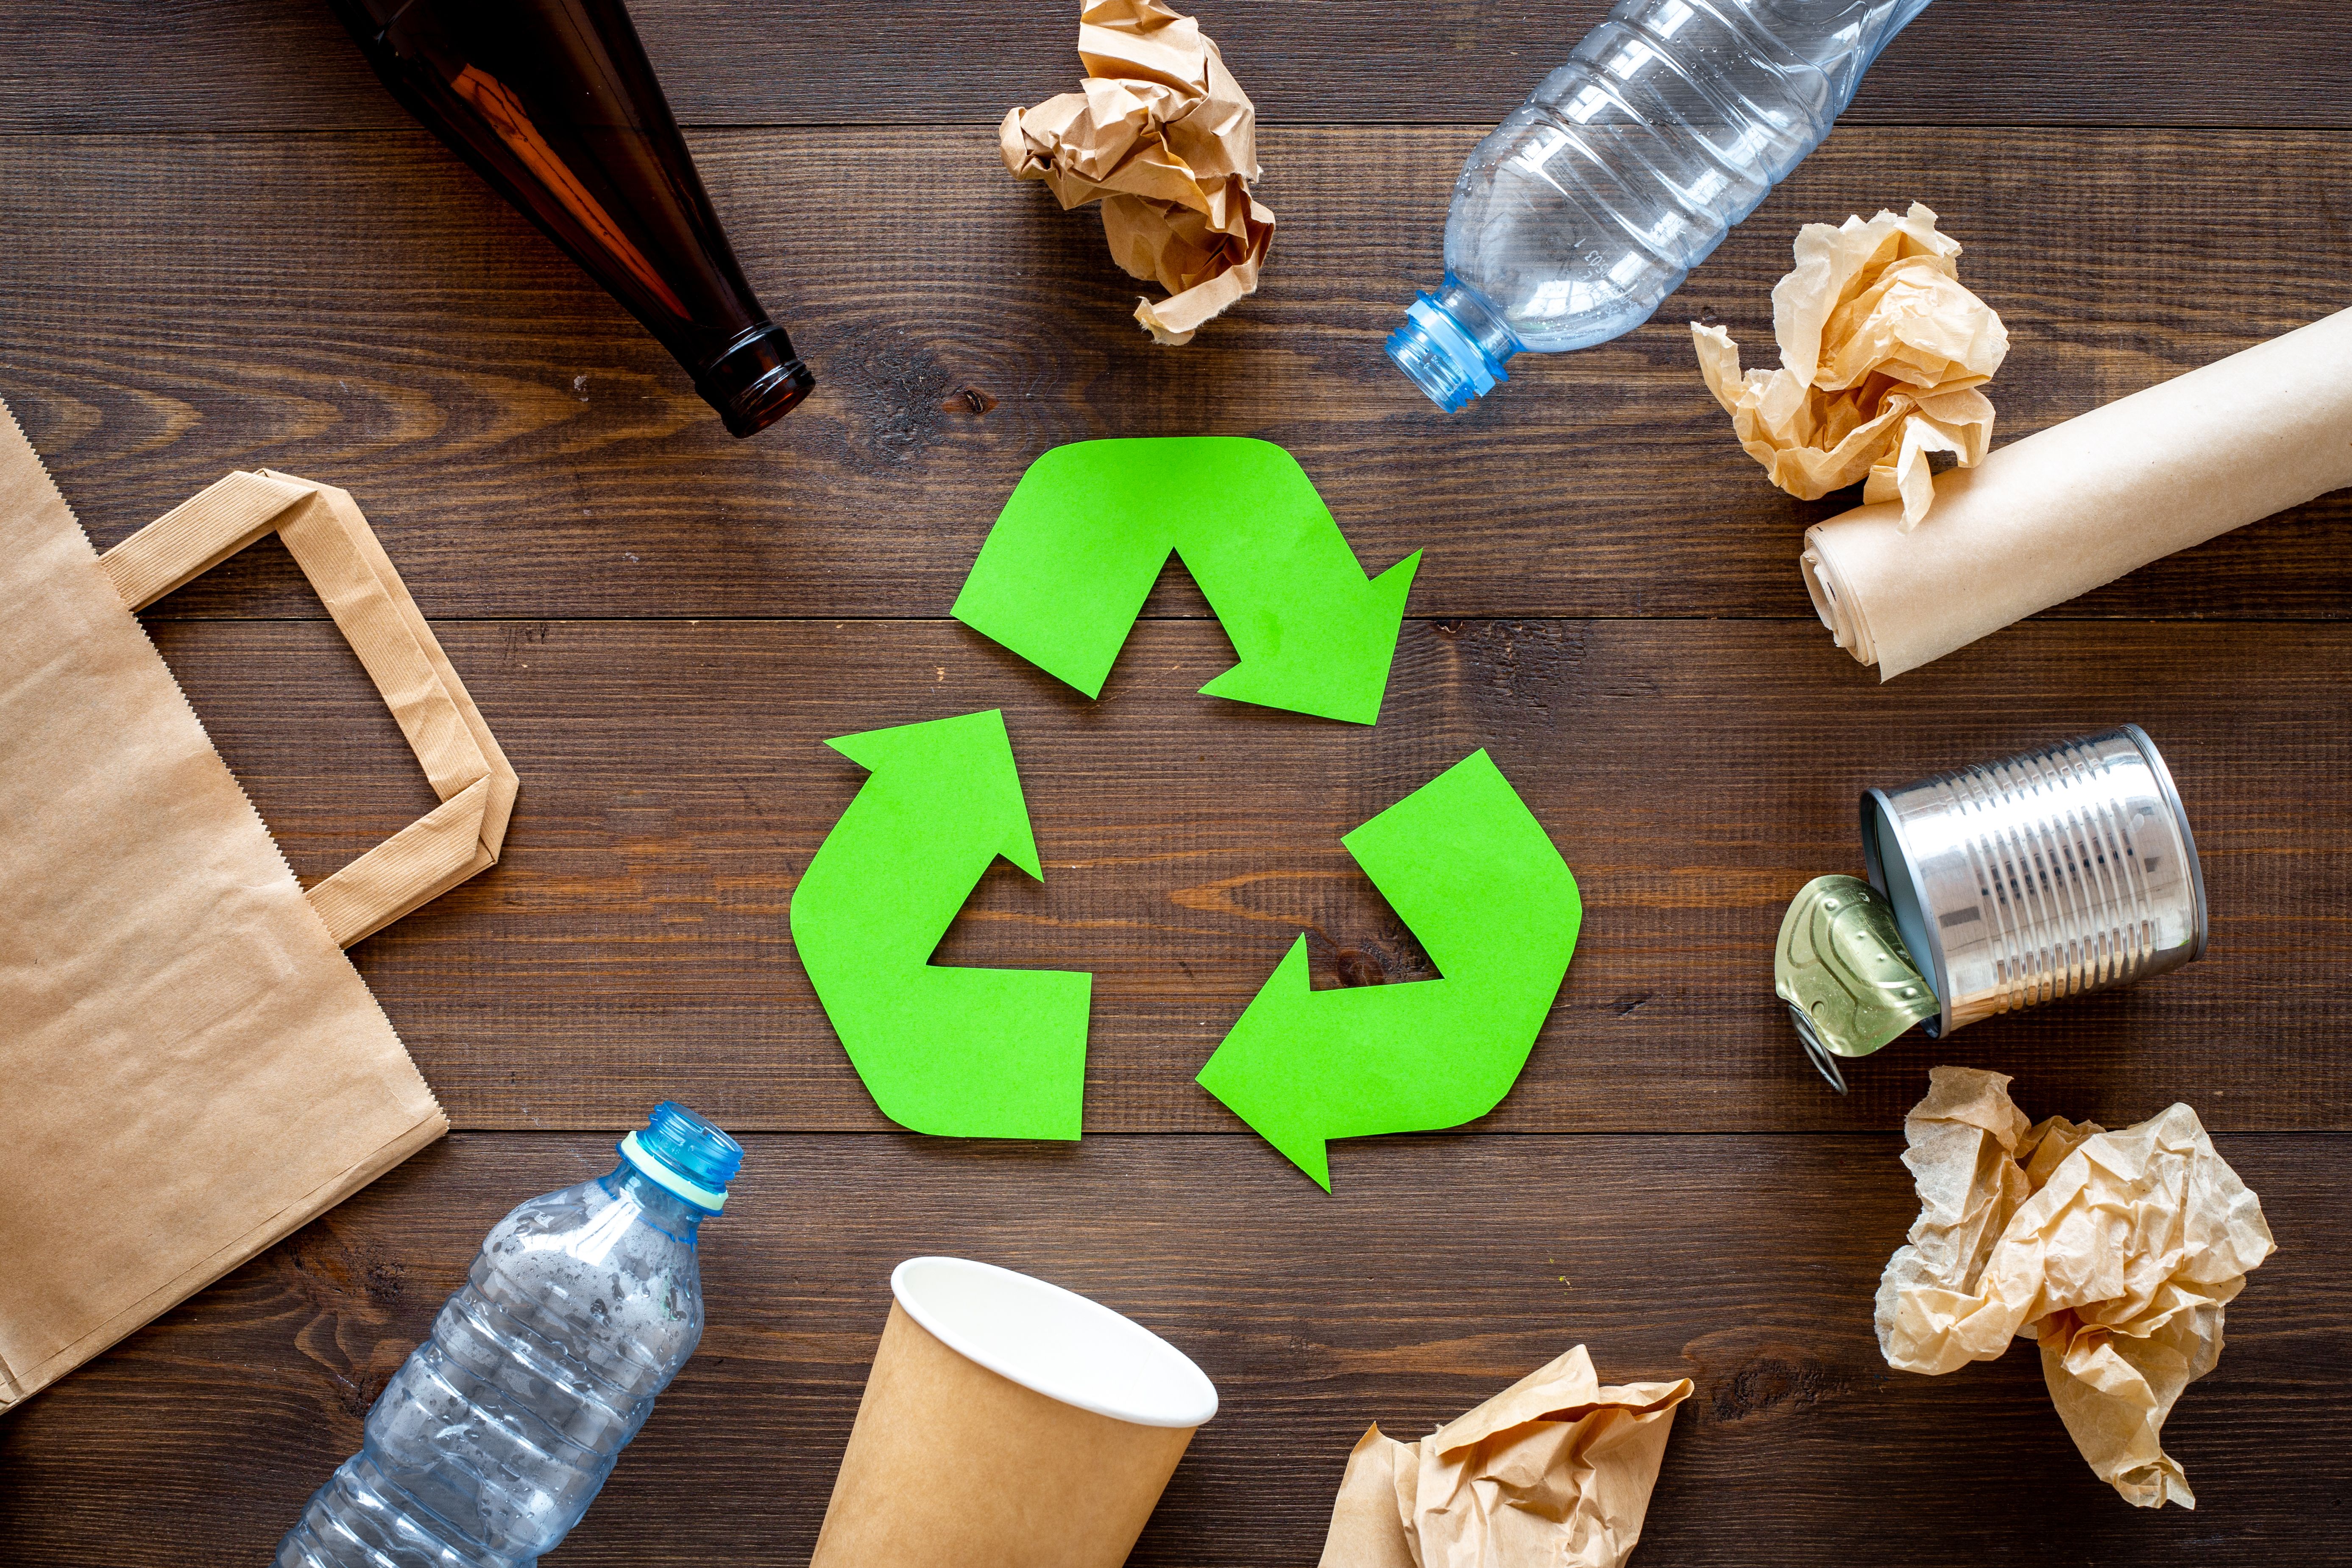 Con el alto volumen de desechos domésticos: Aprende cómo reciclar